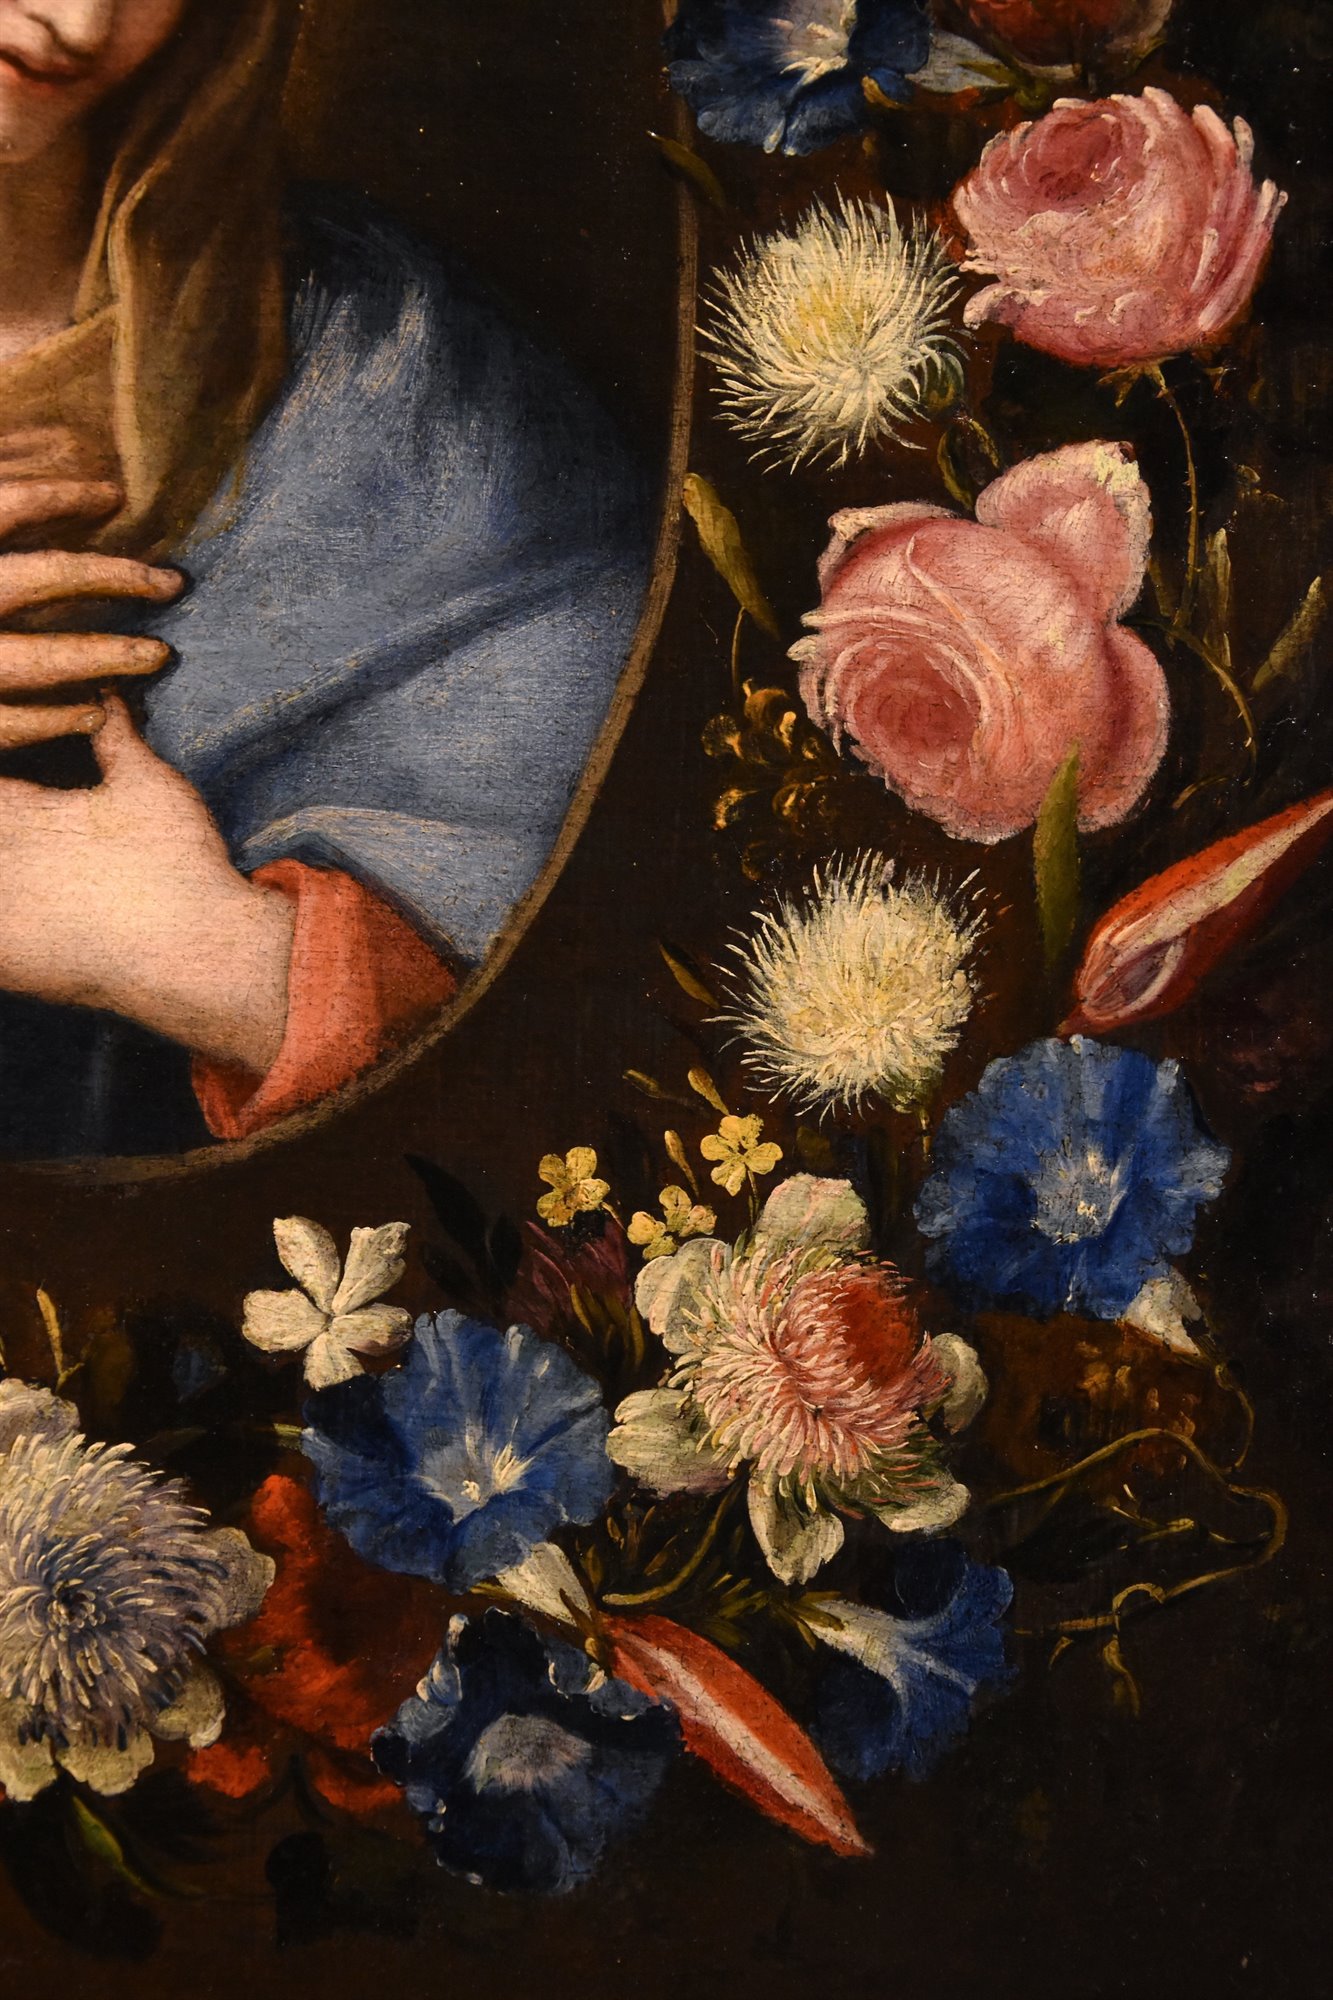 Ghirlanda fiorita con ritratto della Vergine